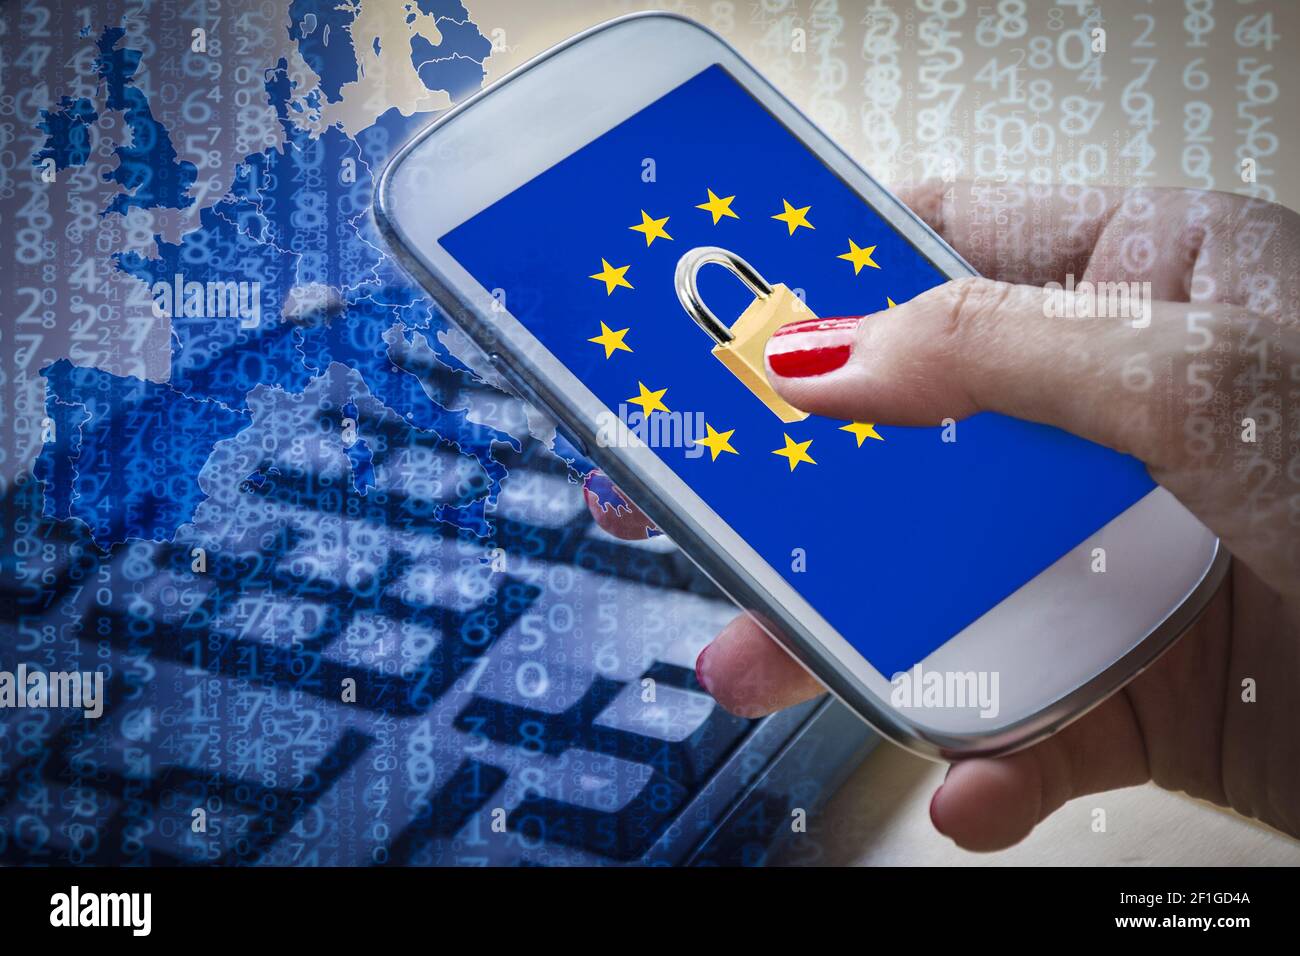 Padlock and EU flag on smartphone screen, GDPR metaphor Stock Photo